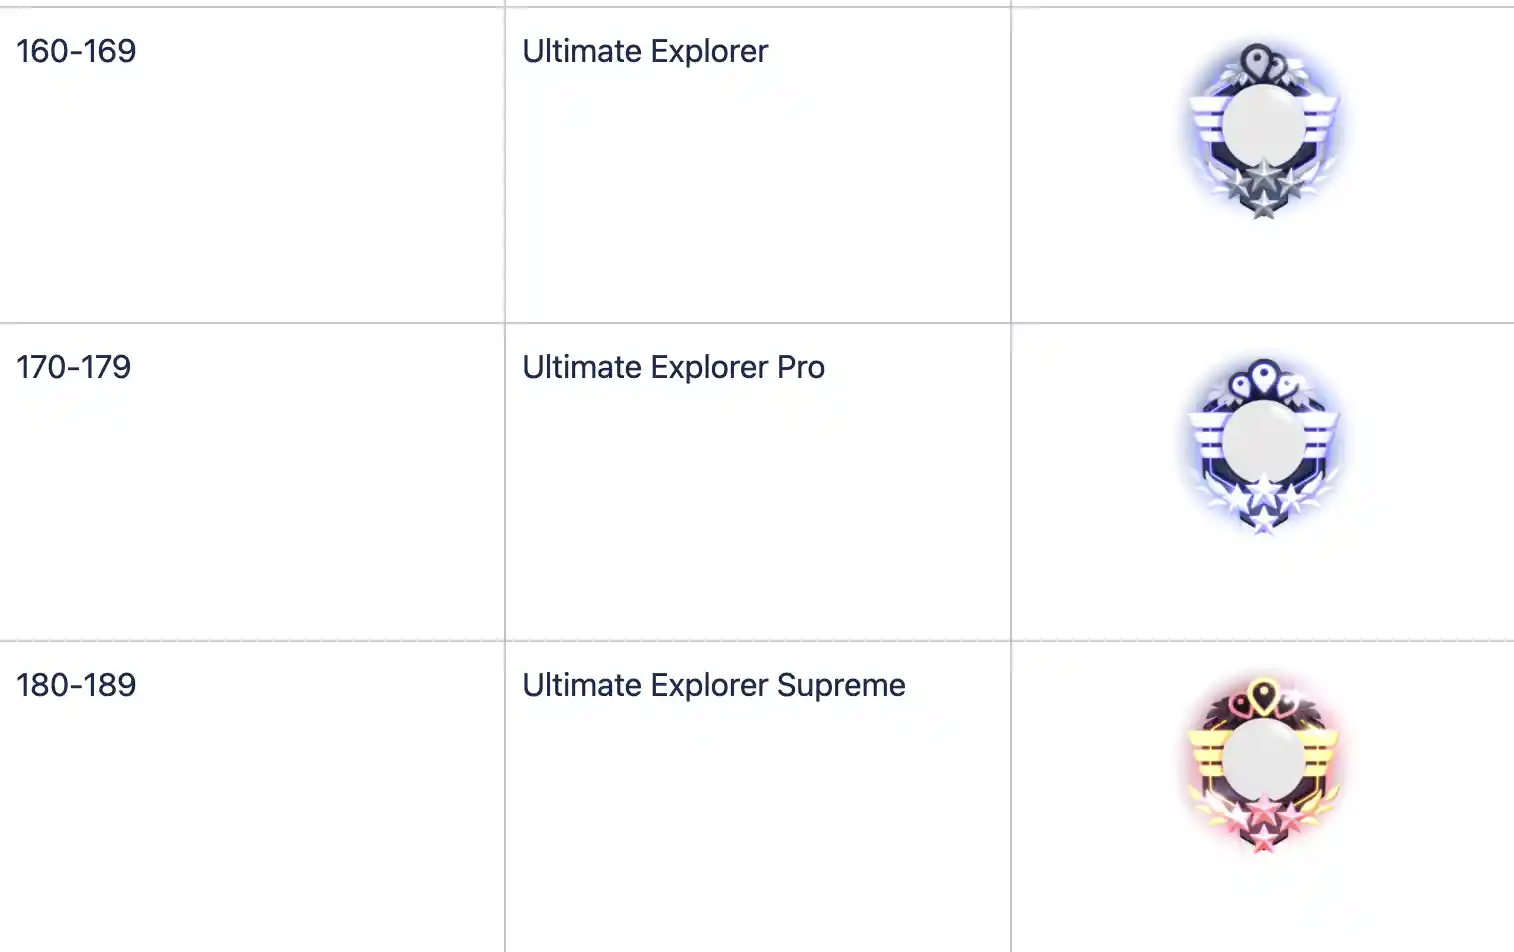 ultimate-explorer-frame.png